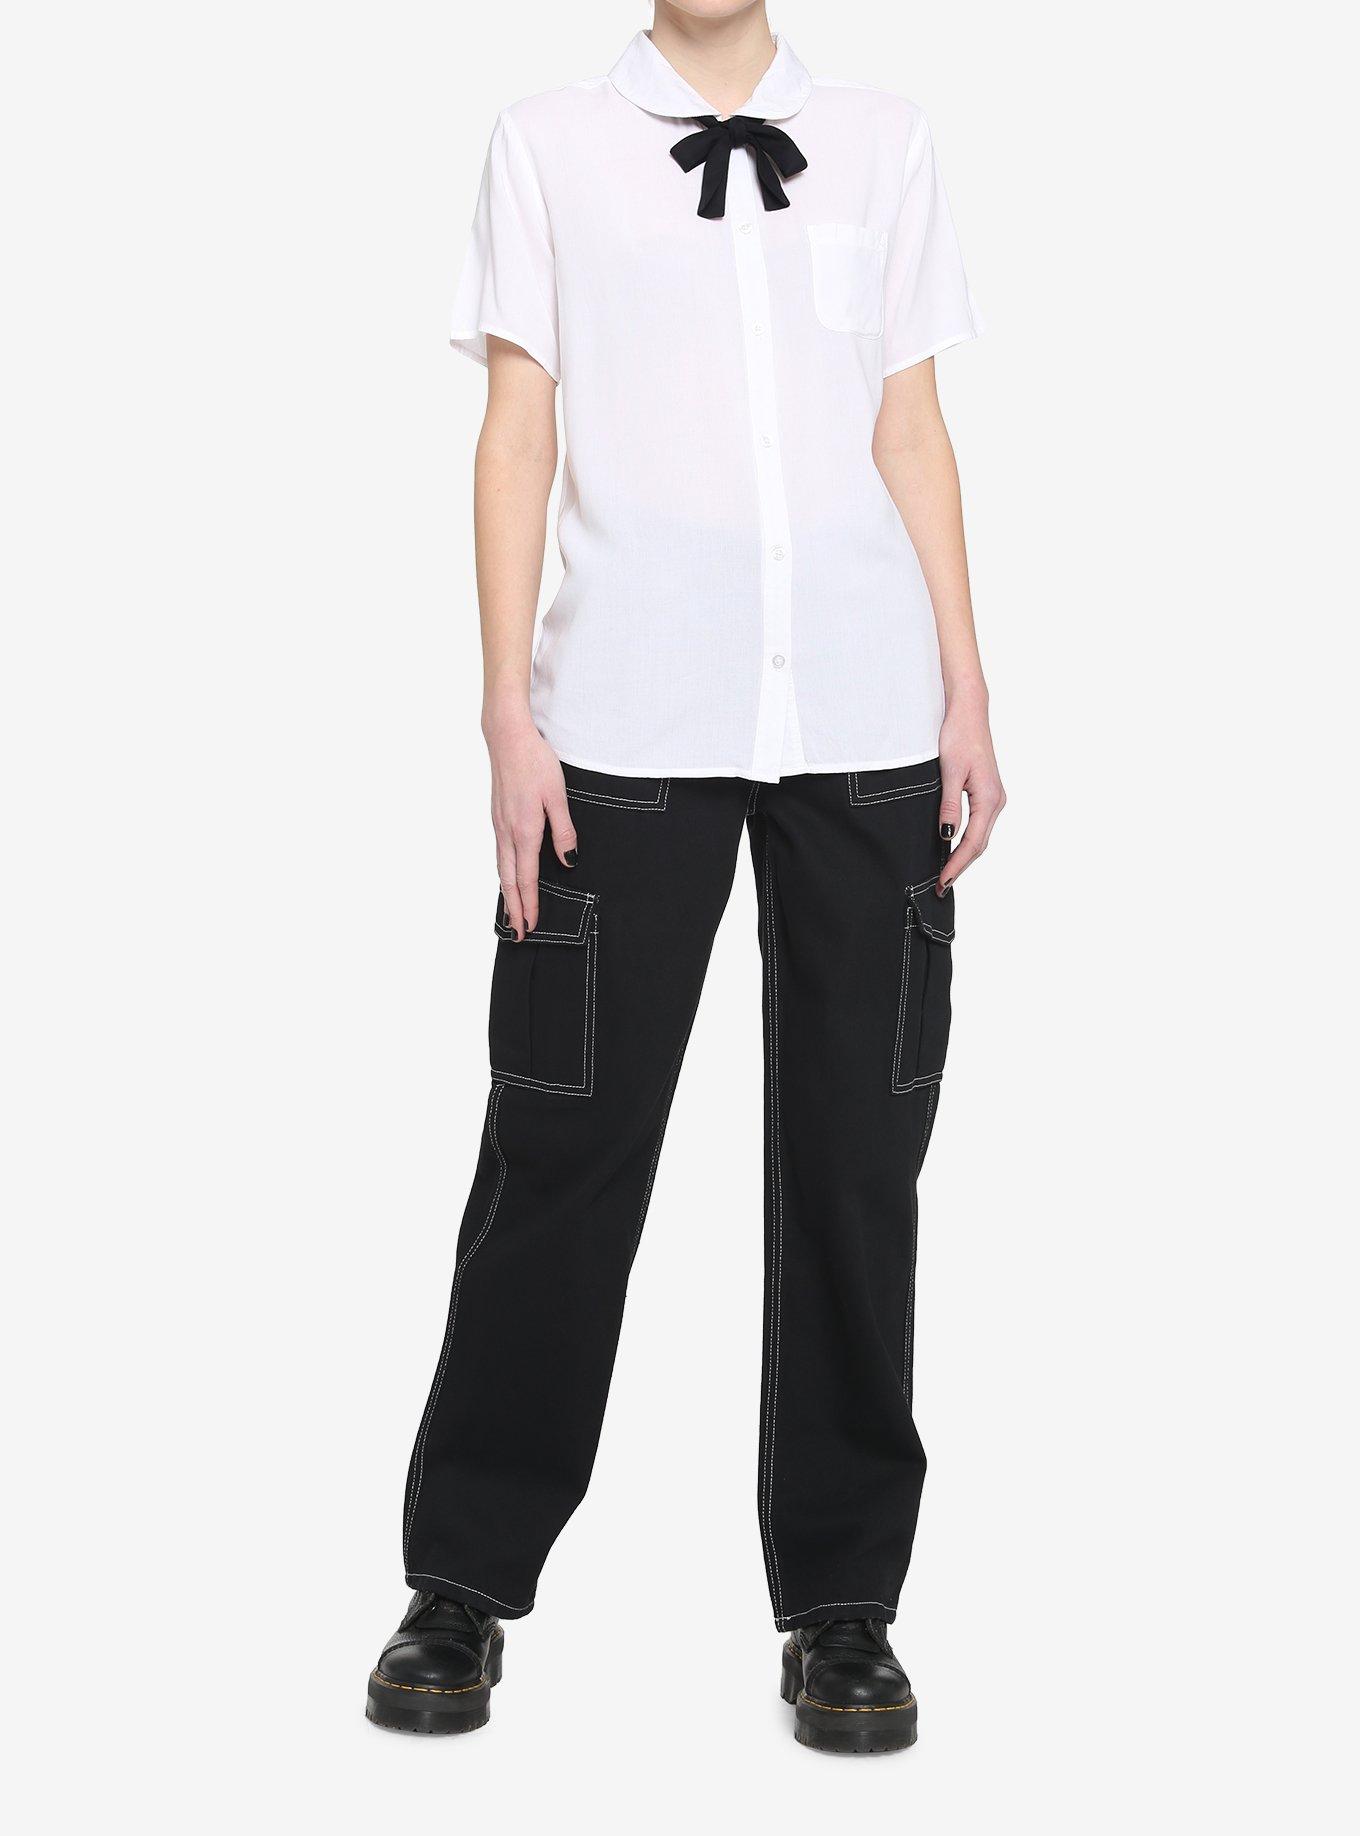 White Black Bow Girls Resort Woven Button-Up, BLACK, alternate